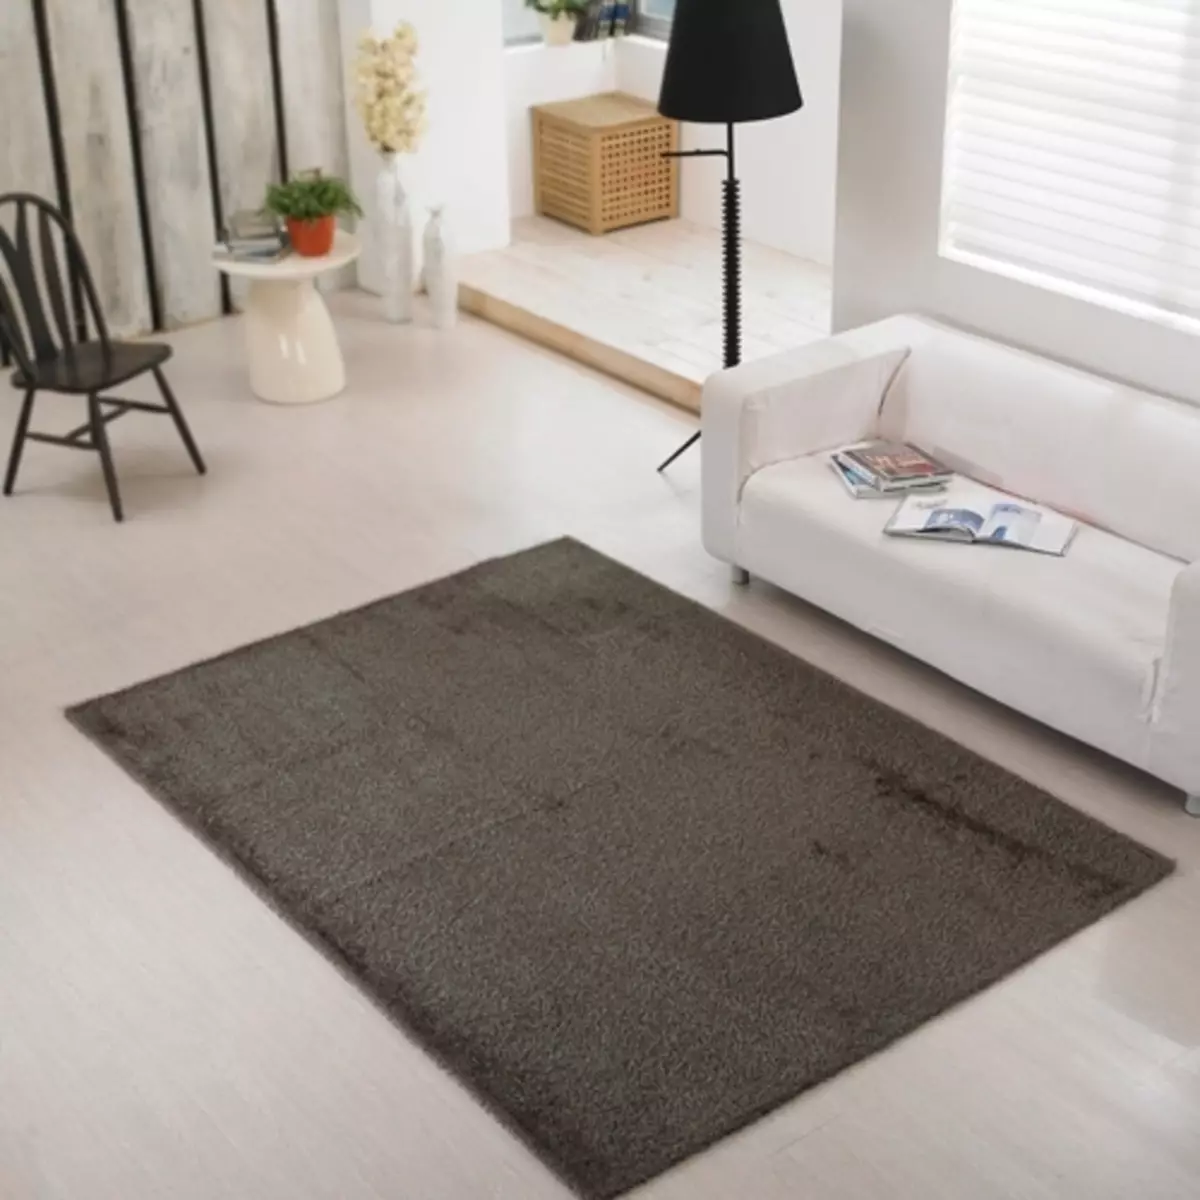 איך לנקות את השטיח בבית? 56 תמונות כיצד במהירות וביעילות להסיר לכלוך מתוך צמר פאלנקס אור השטיח אור 11125_51